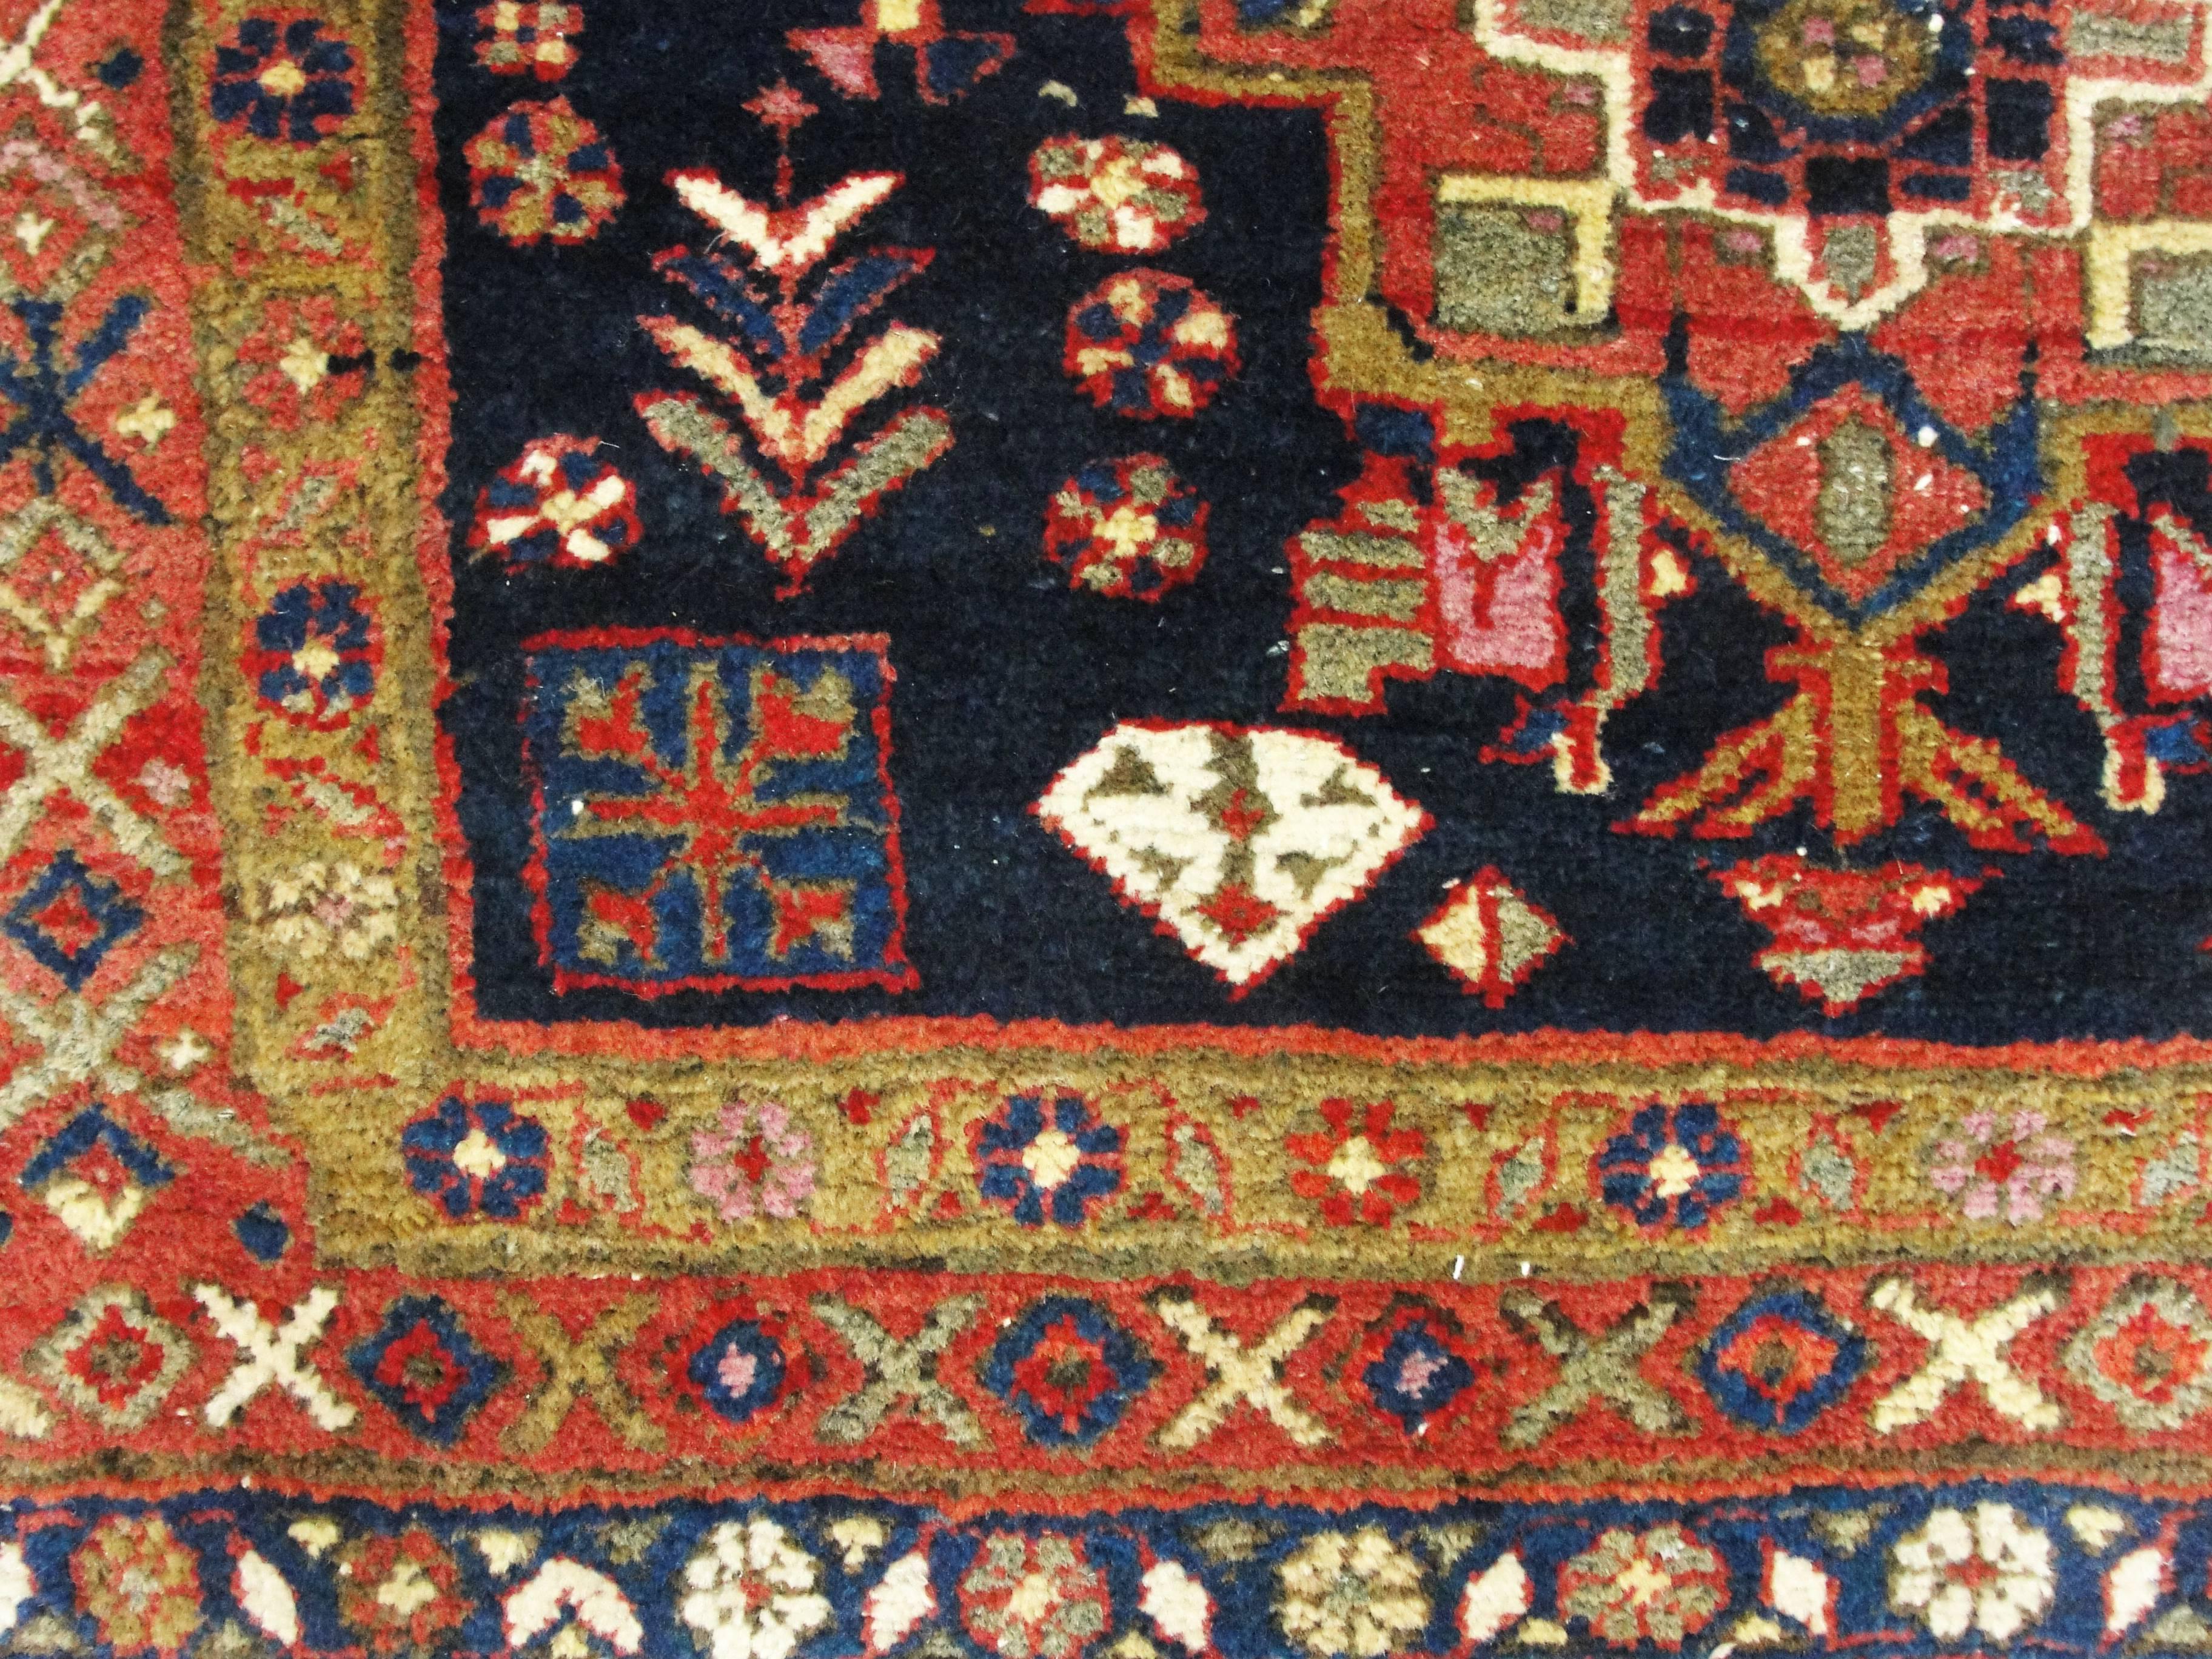 20th Century Incredible Persian Heriz Oriental Rug, Great Colors